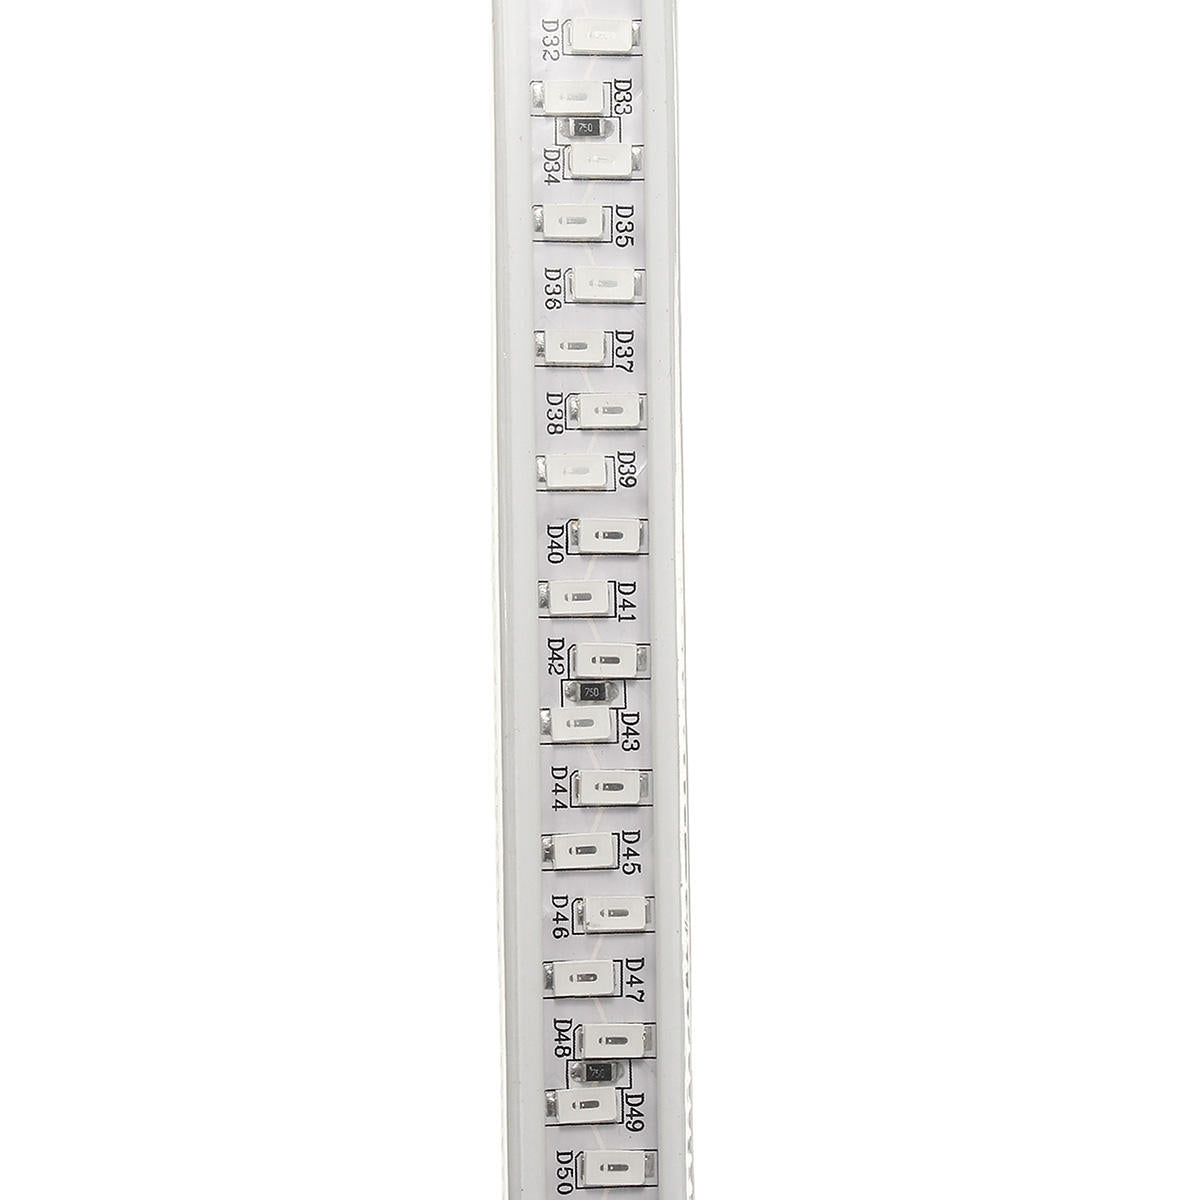 ac220v 3m waterbestendig smd5730 5630 flexibele led-strook tape rope light eu-plug voor huisdecoratie